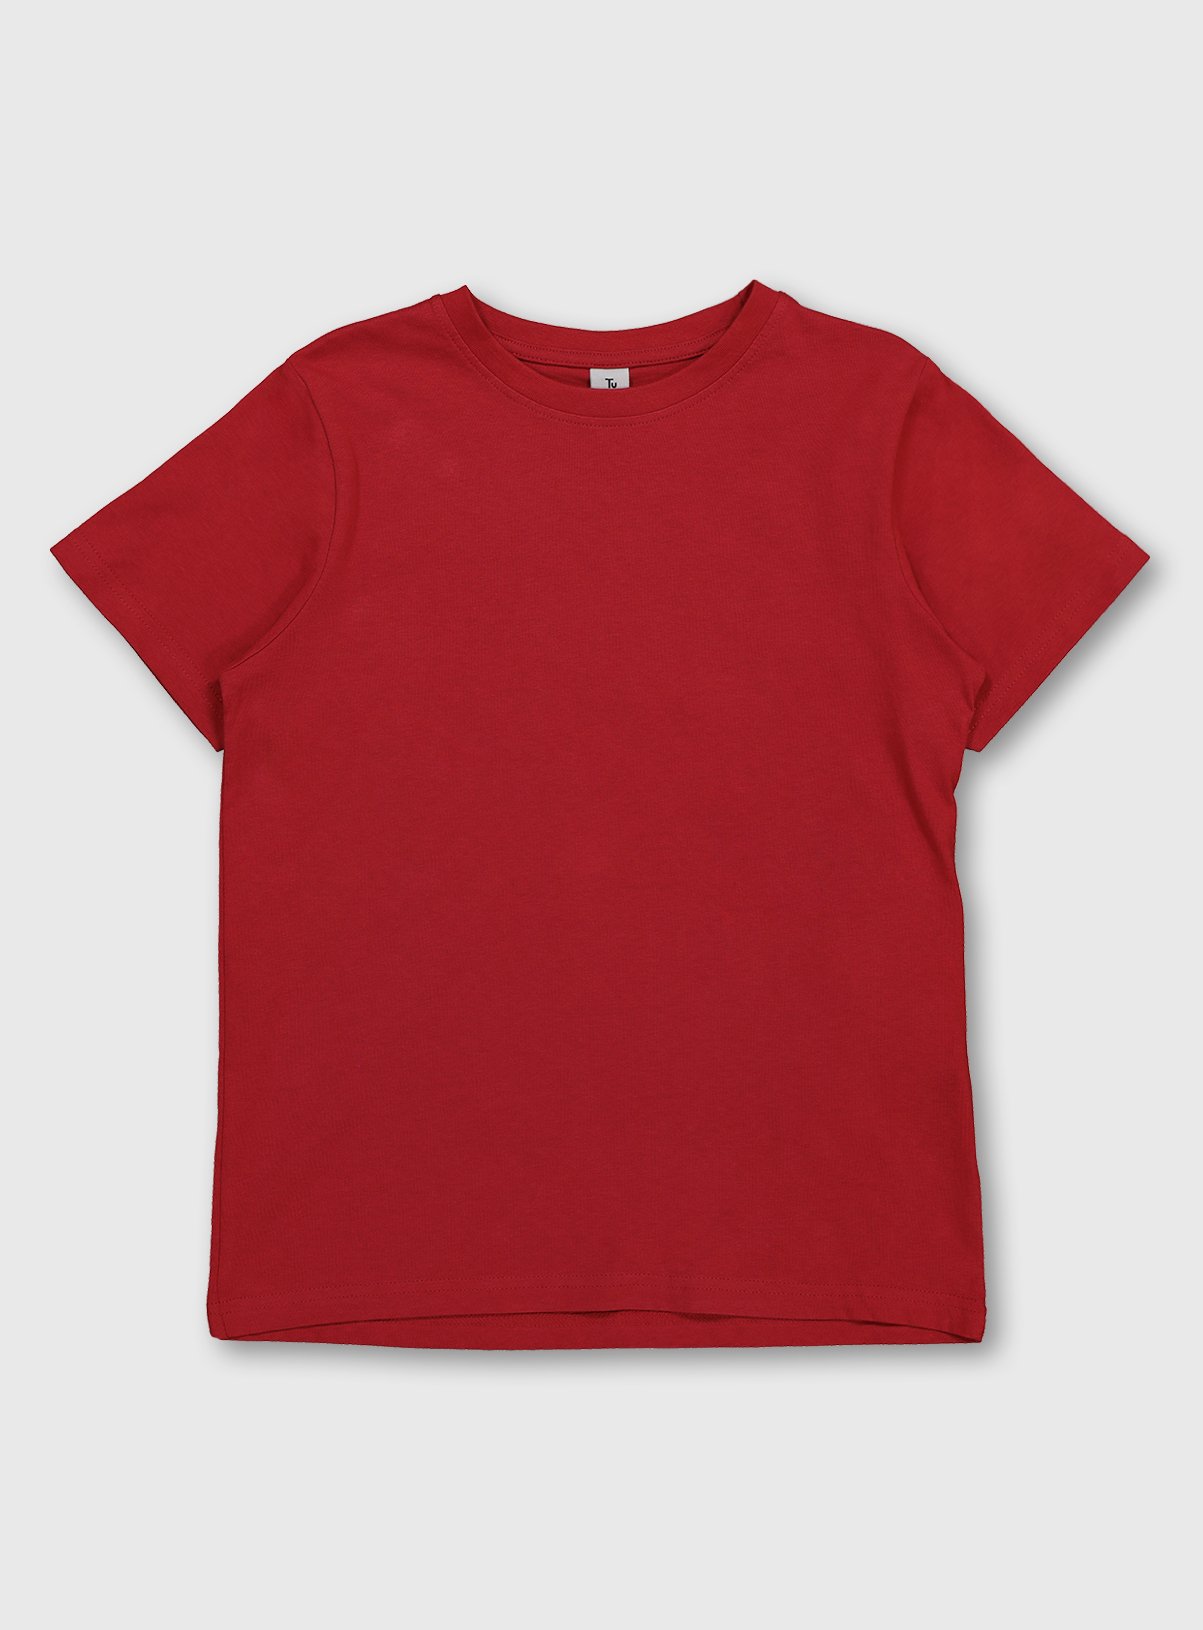 tshirt plain red